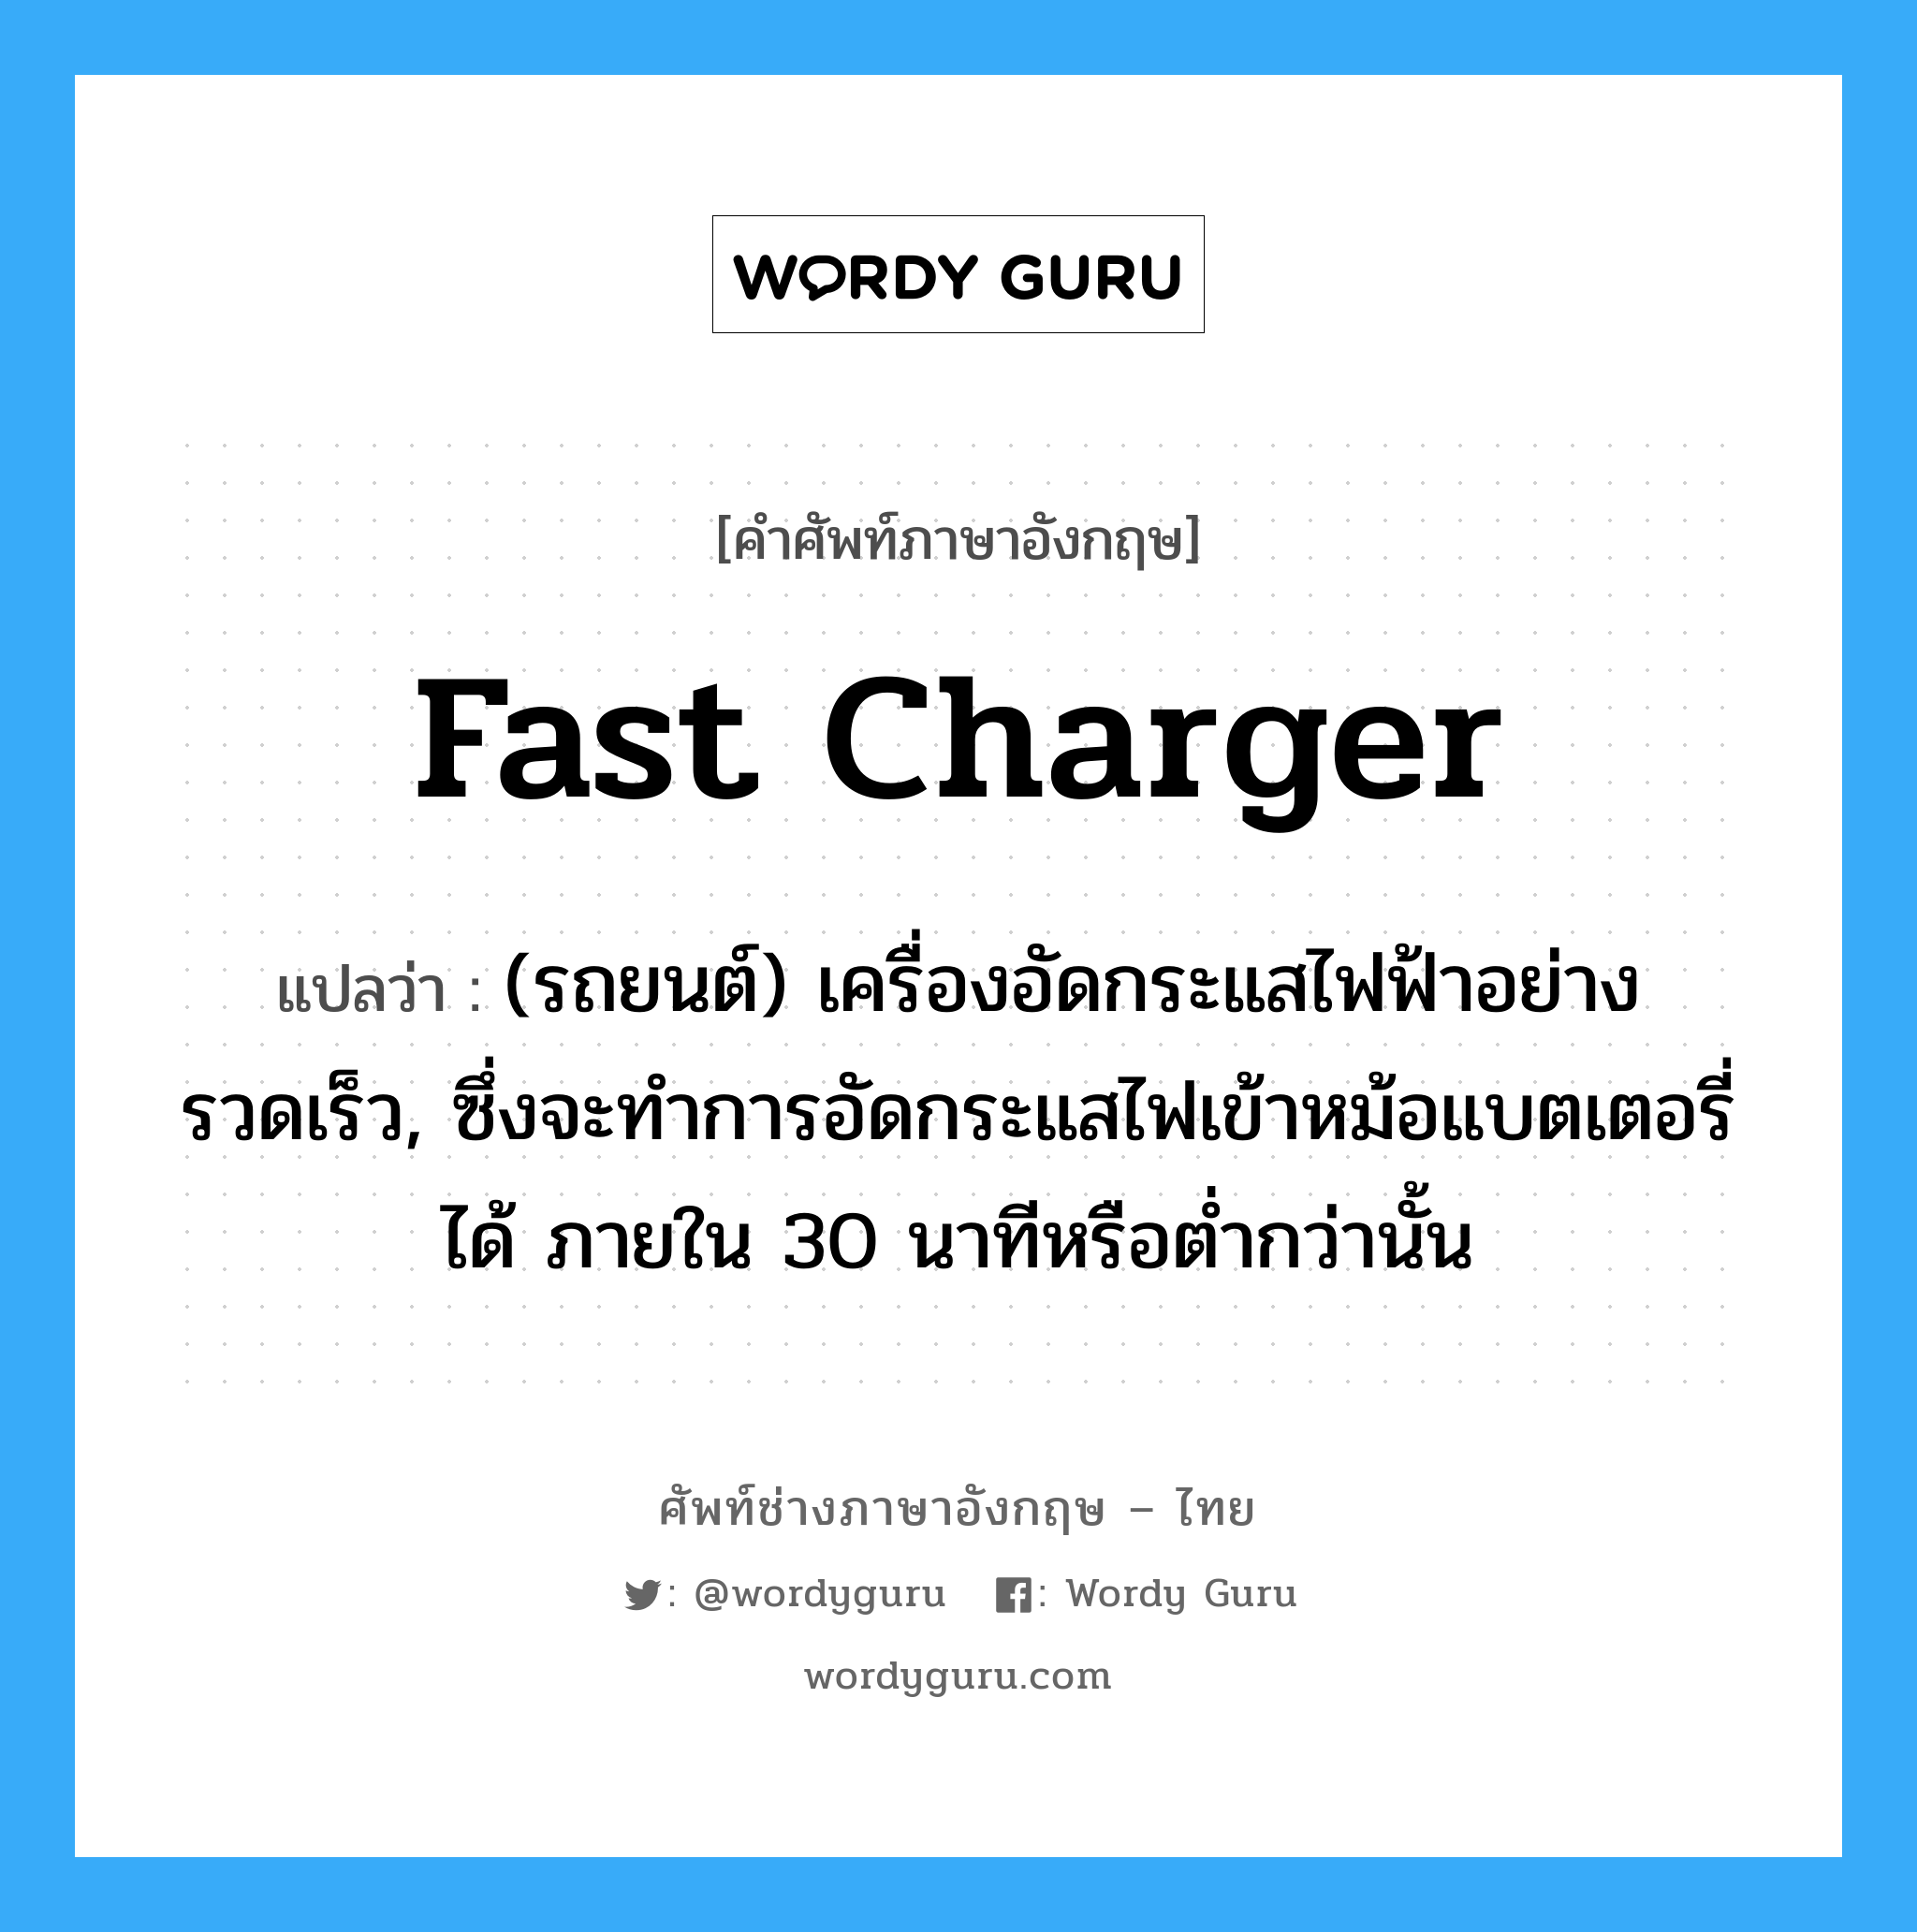 fast charger แปลว่า?, คำศัพท์ช่างภาษาอังกฤษ - ไทย fast charger คำศัพท์ภาษาอังกฤษ fast charger แปลว่า (รถยนต์) เครื่องอัดกระแสไฟฟ้าอย่างรวดเร็ว, ซึ่งจะทำการอัดกระแสไฟเข้าหม้อแบตเตอรี่ได้ ภายใน 30 นาทีหรือต่ำกว่านั้น